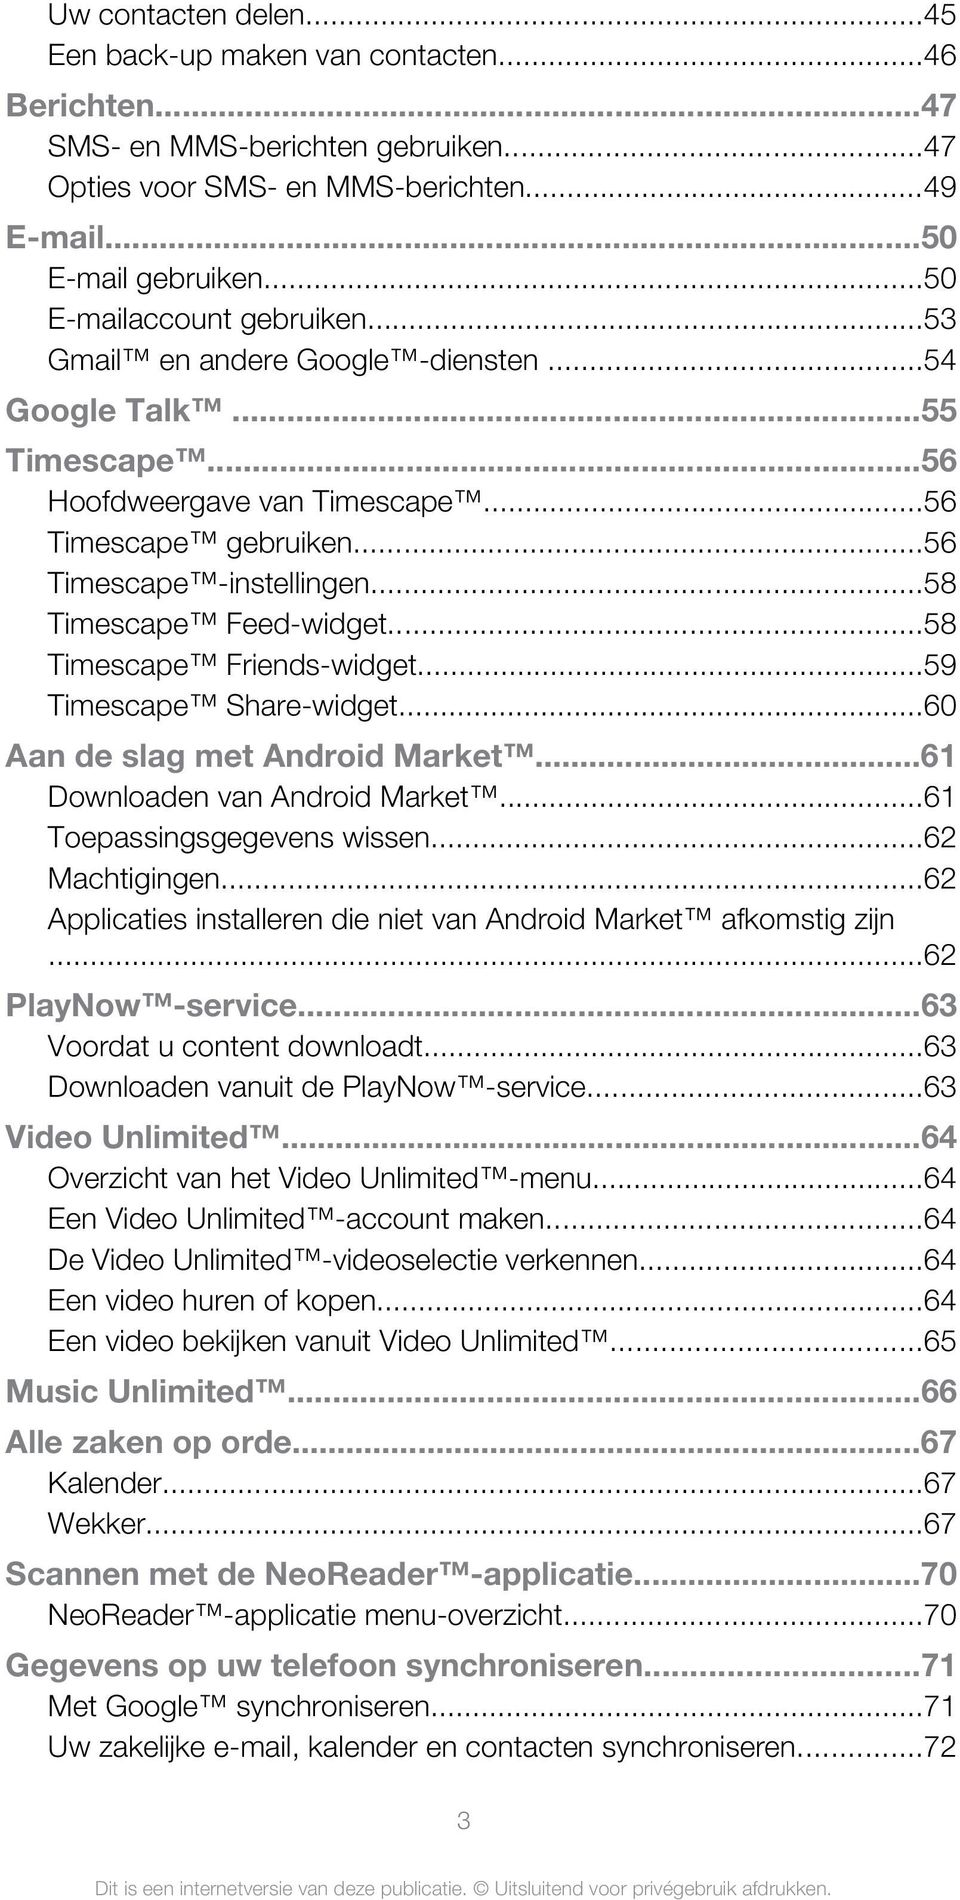 ..58 Timescape Feed-widget...58 Timescape Friends-widget...59 Timescape Share-widget...60 Aan de slag met Android Market...61 Downloaden van Android Market...61 Toepassingsgegevens wissen.